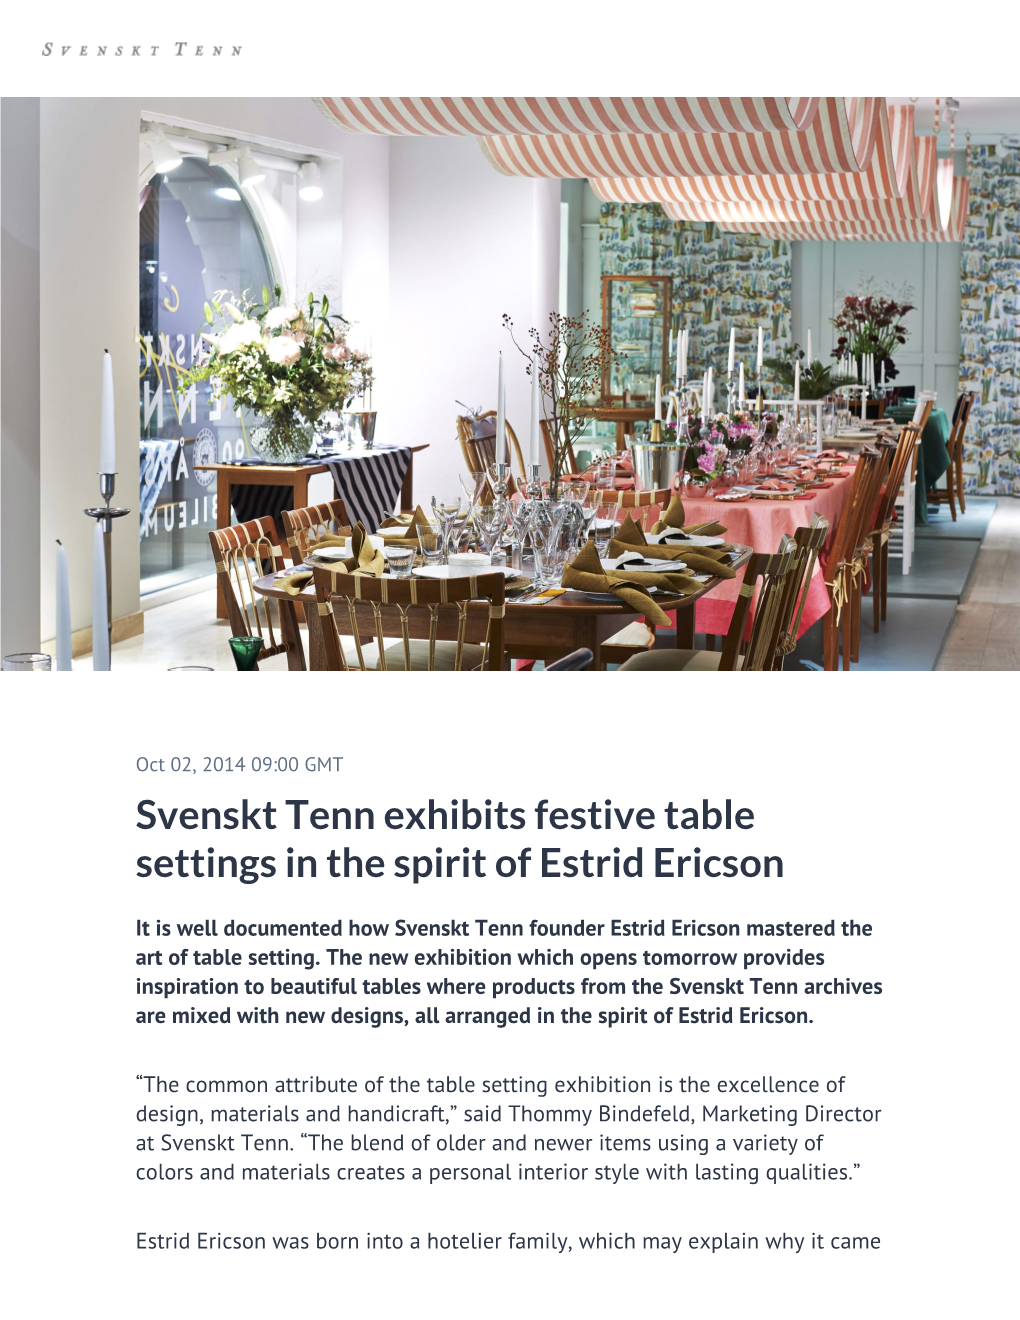 Svenskt Tenn Exhibits Festive Table Settings in the Spirit of Estrid Ericson